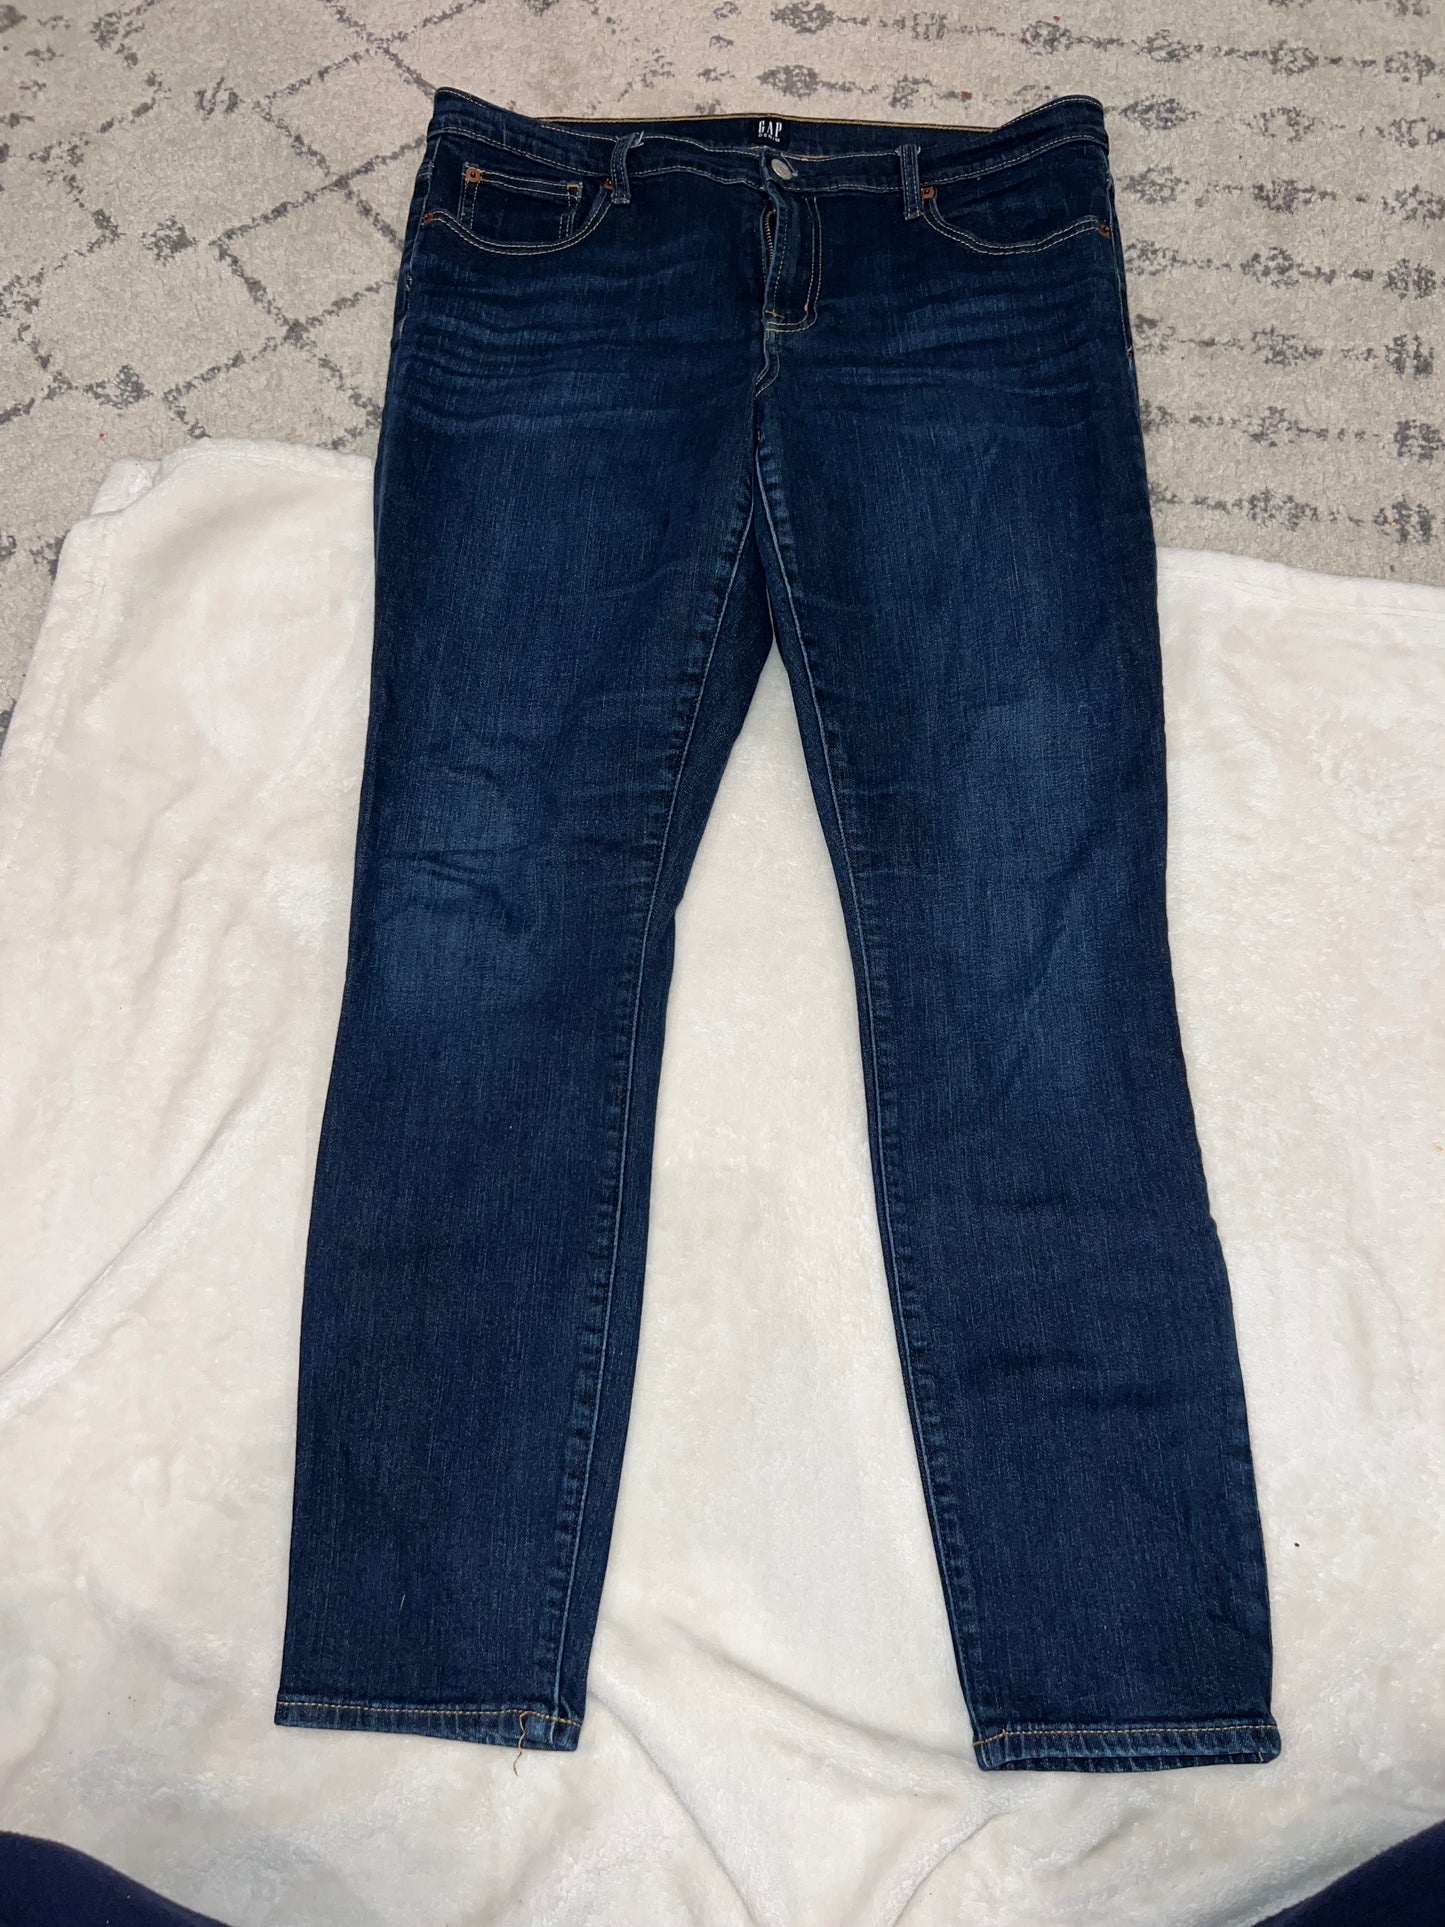 Womens Size 16 long Gap True skinny jeans